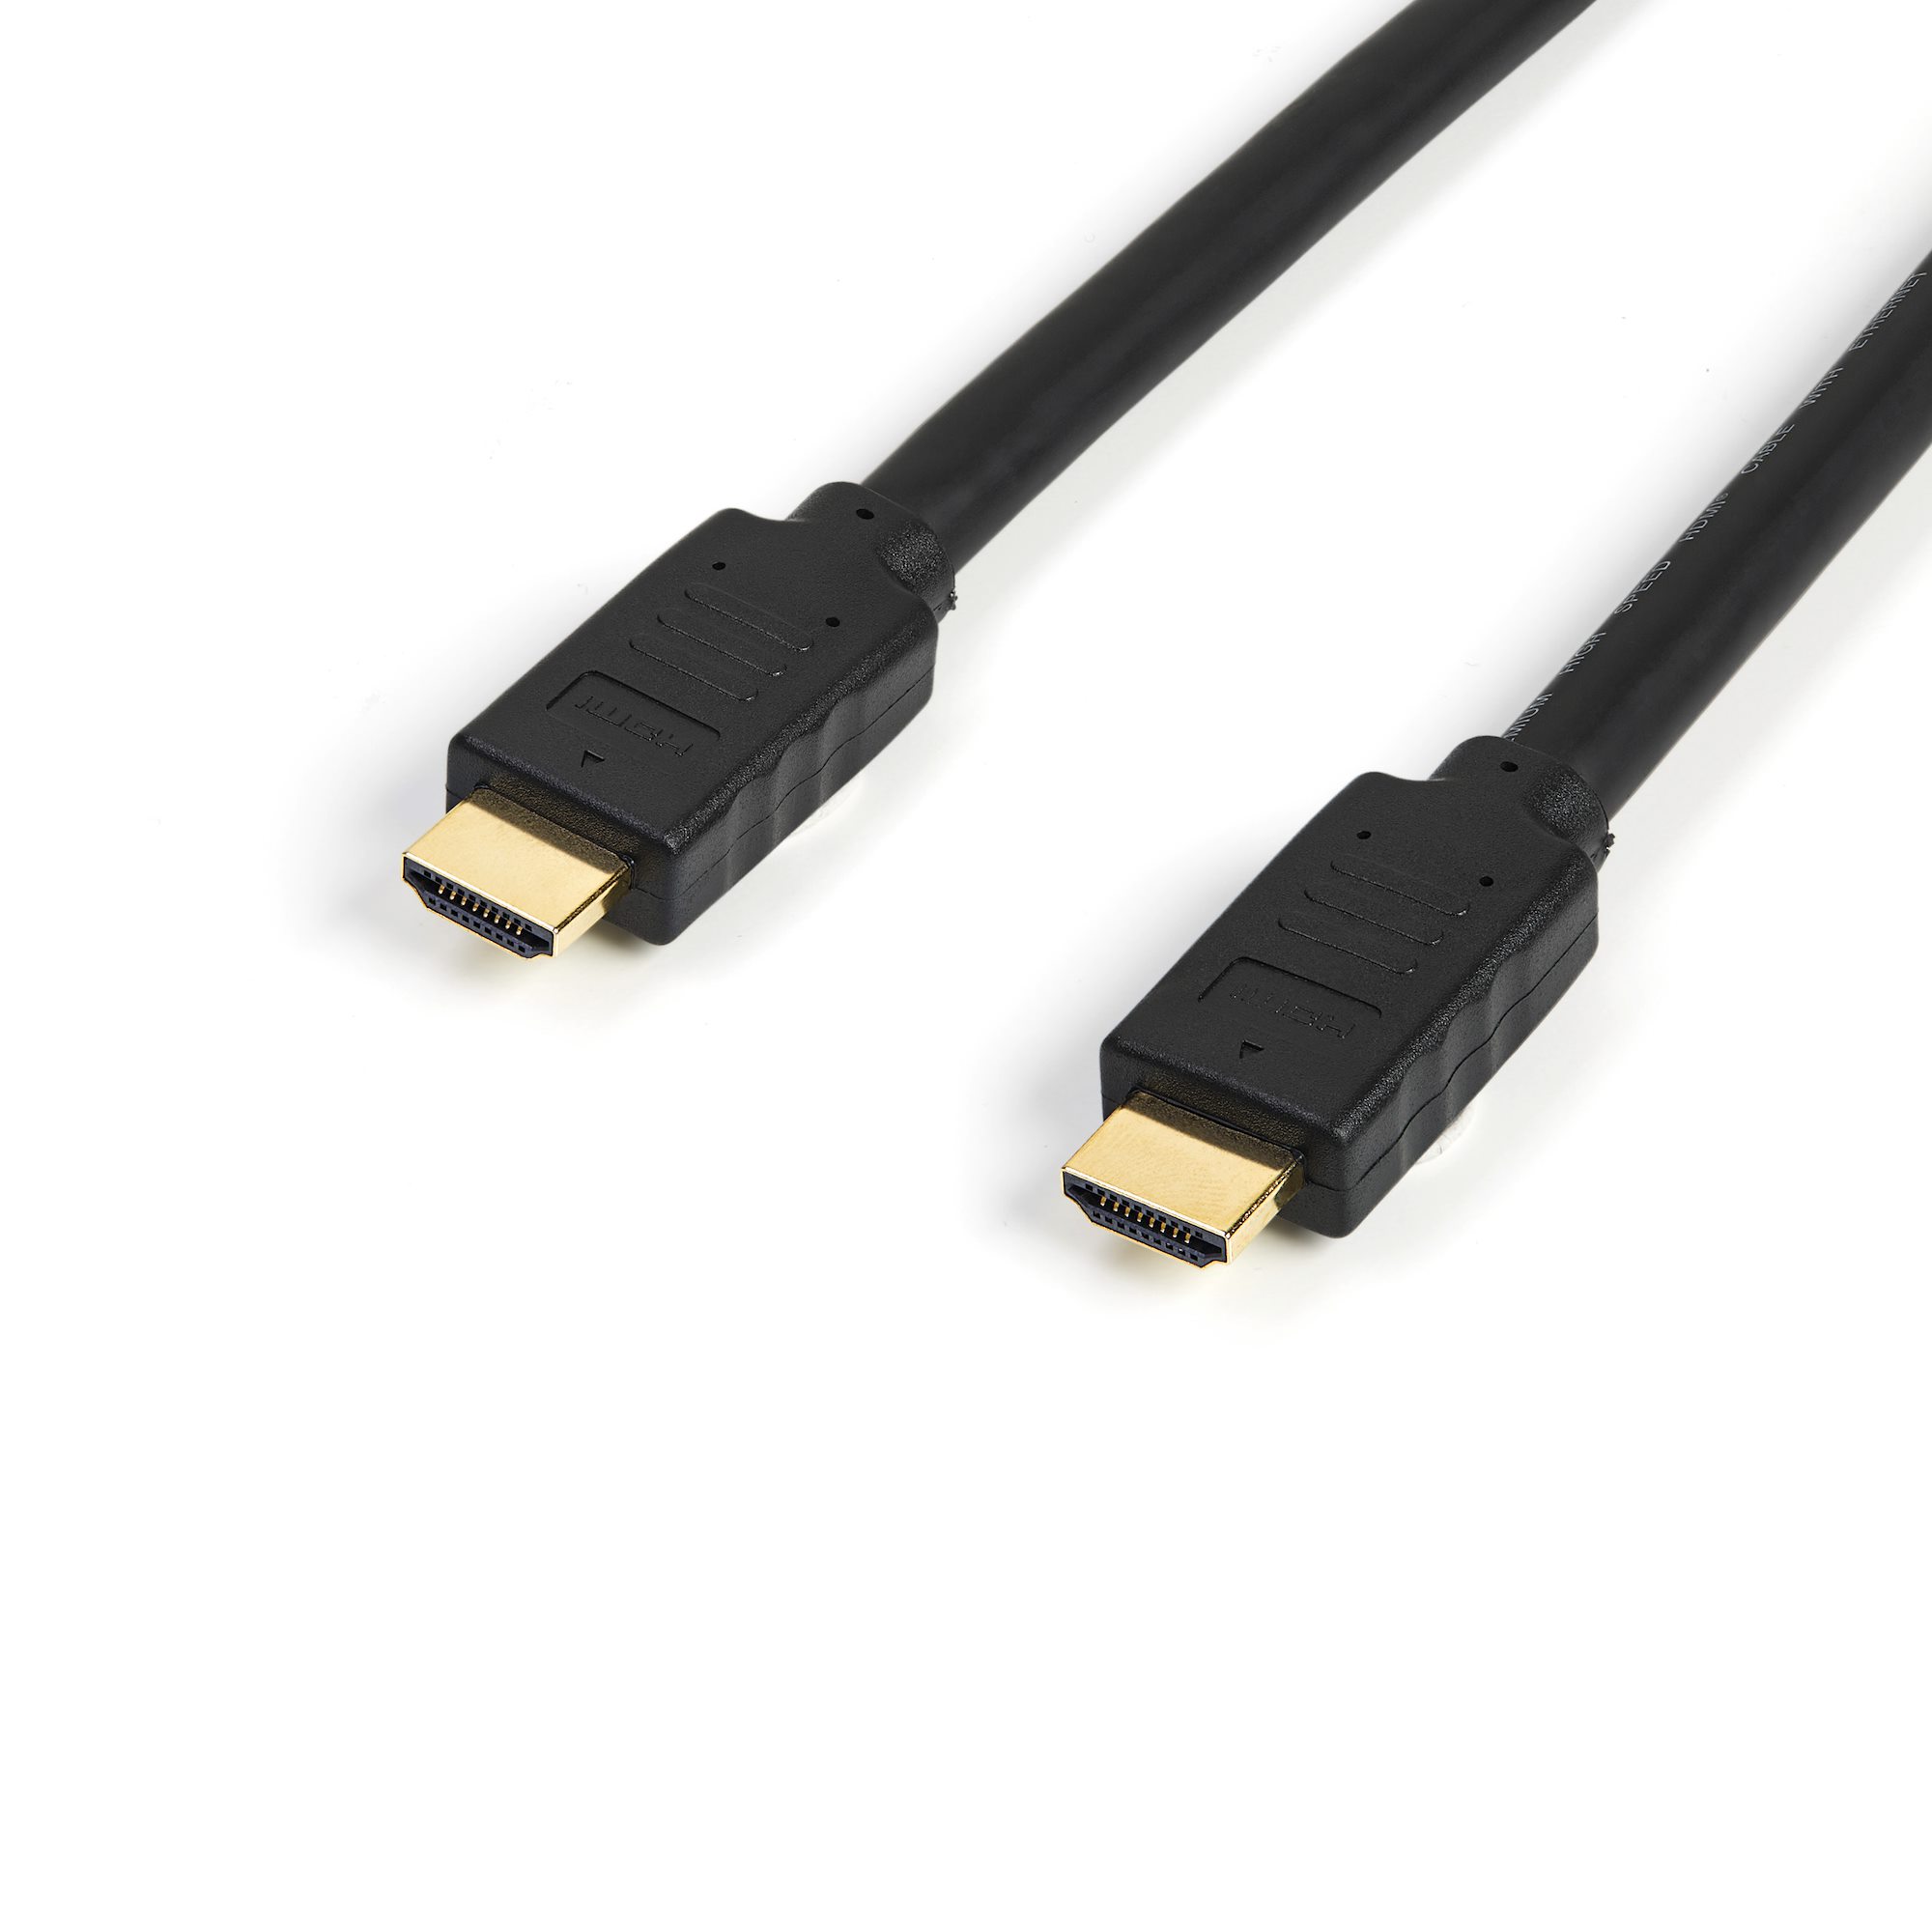 Cable 5m HDMI alta velocidad 4K 60Hz - Cables HDMI® y Adaptadores HDMI | StarTech.com